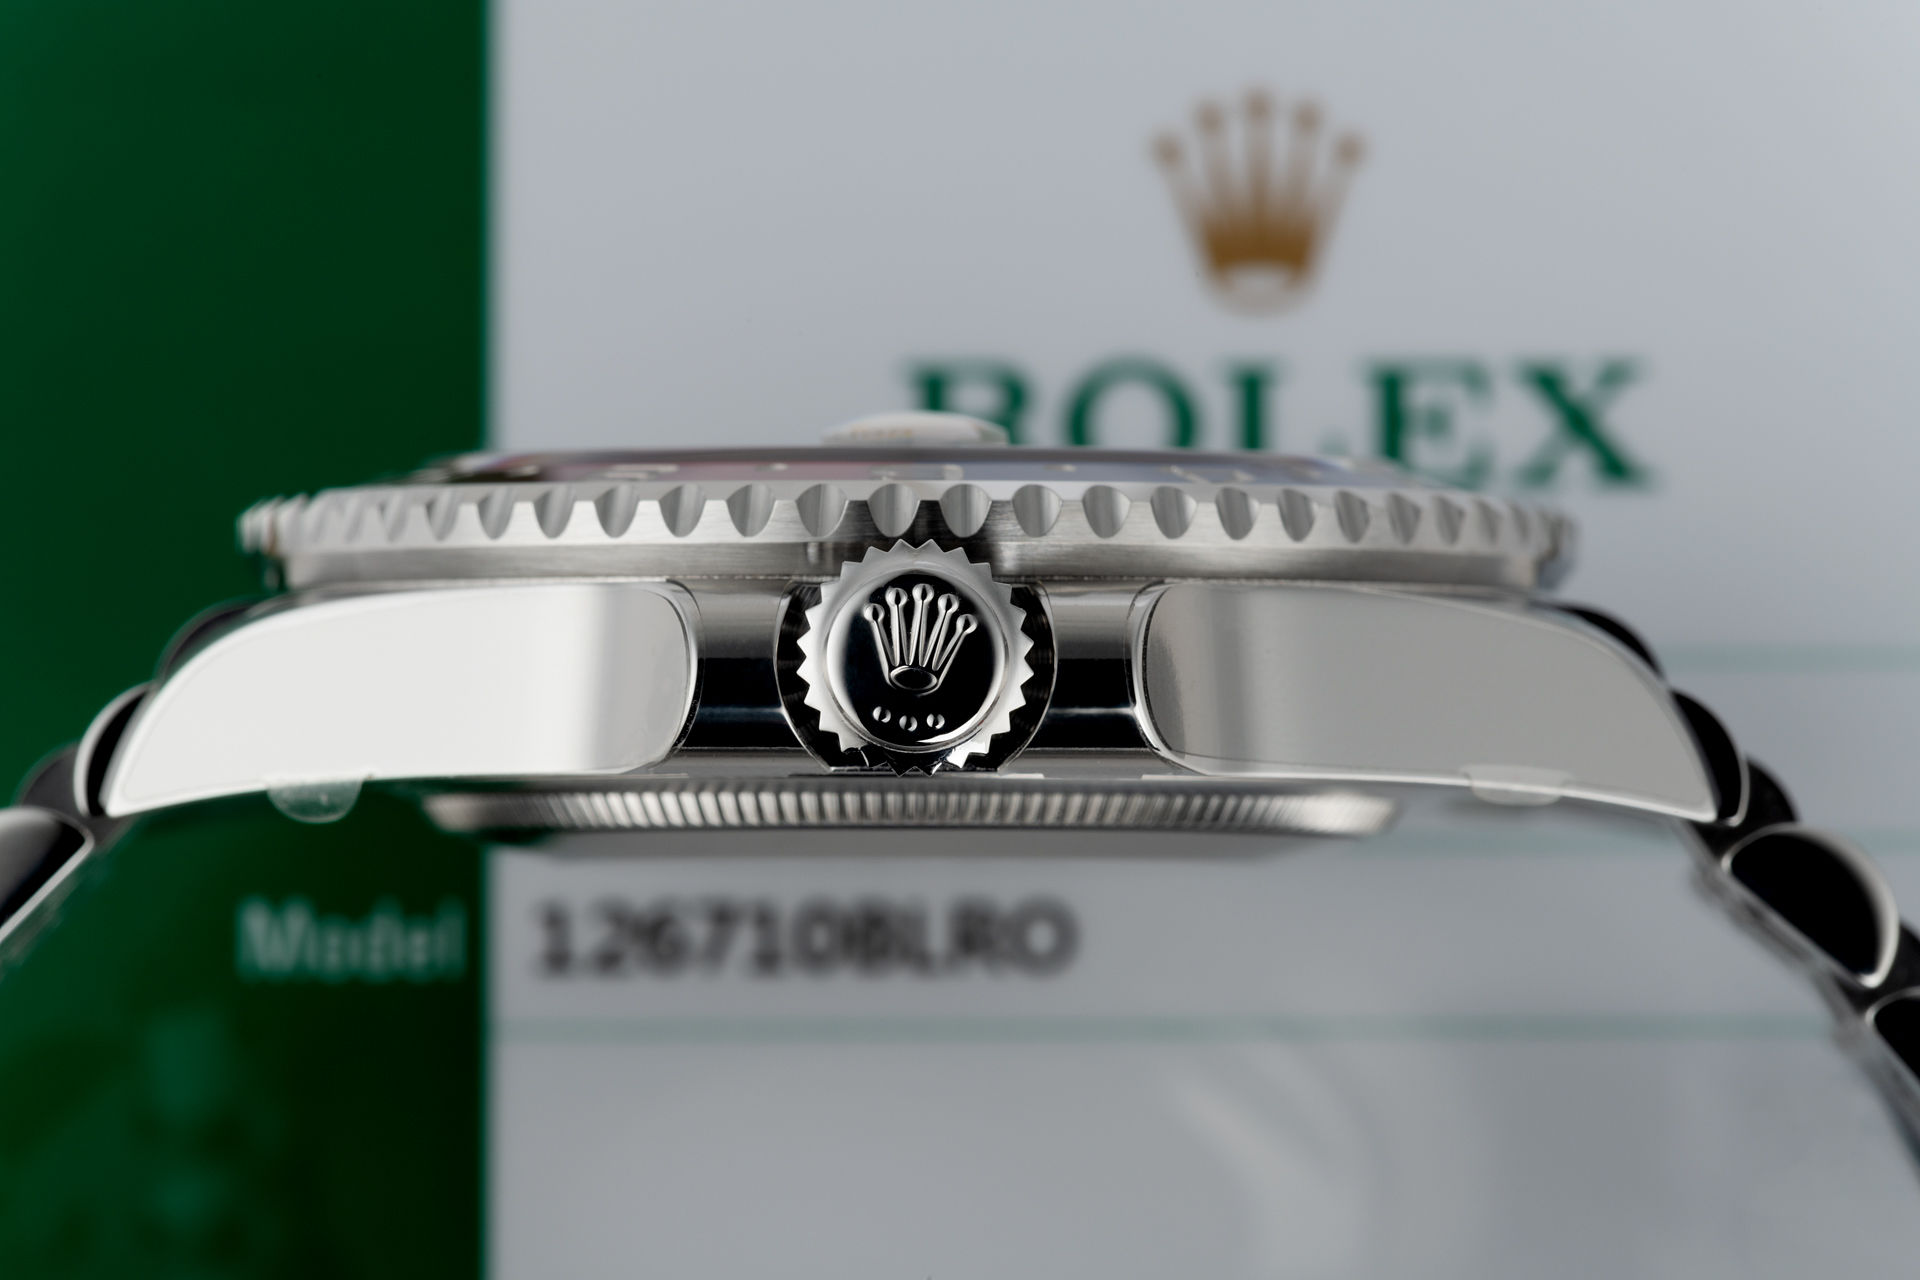 ref 126710BLRO | Brand New 'BLRO' Fully Stickered | Rolex GMT-Master II